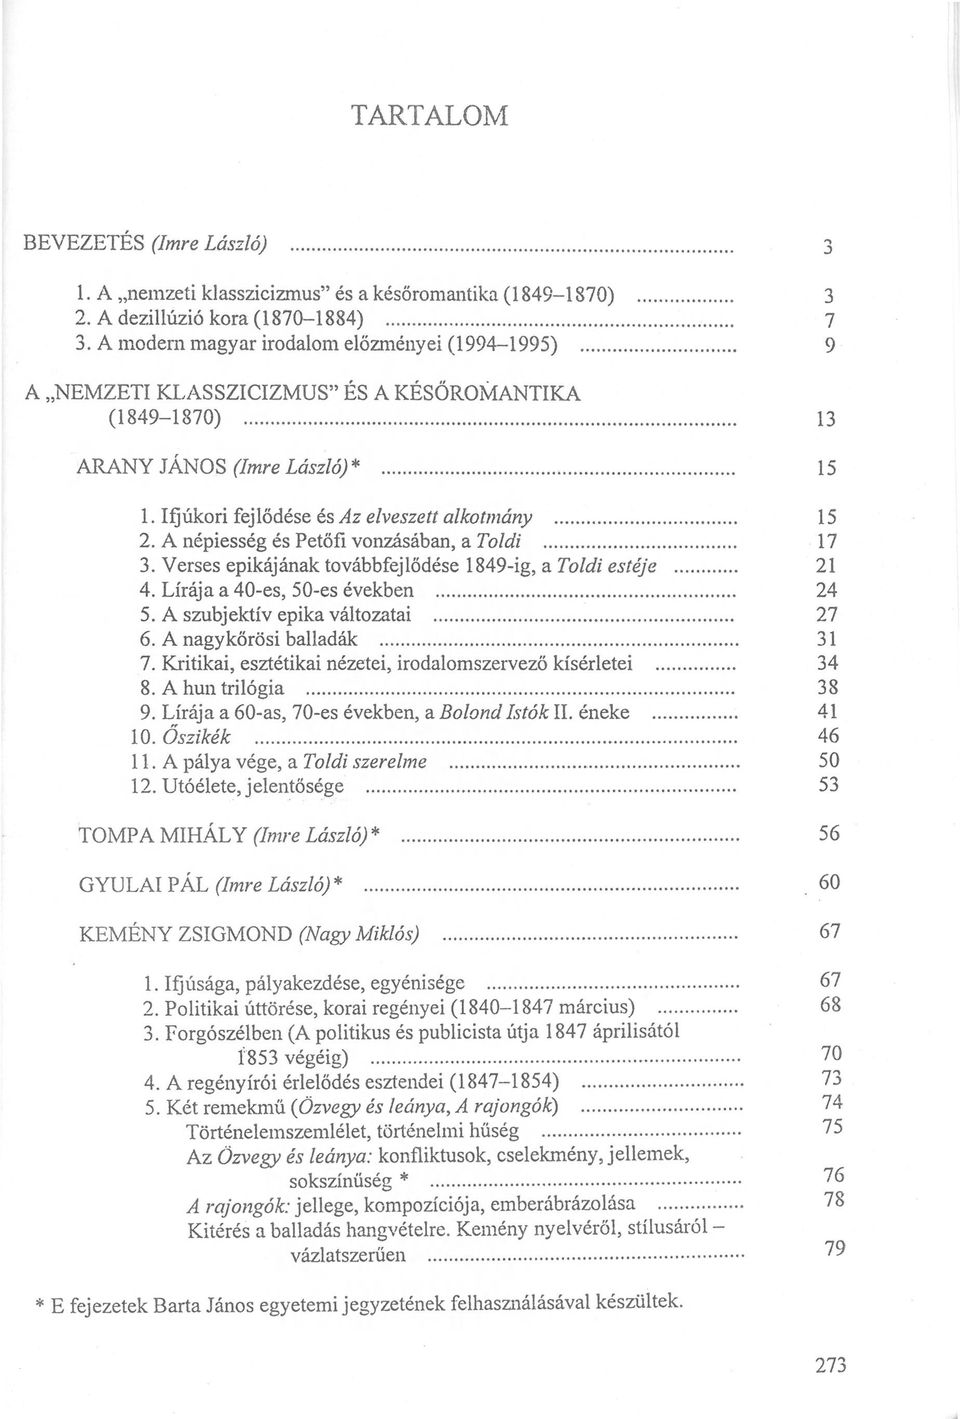 A népiesség és Petőfi vonzásában, a Toldi 3. Verses epikájának továbbfejlődése 1849-ig, a Toldi estéje 4. Lírája a 40-es, 50-es években 5. A szubj ektív epika változatai 6. A nagykőrösi balladák 7.